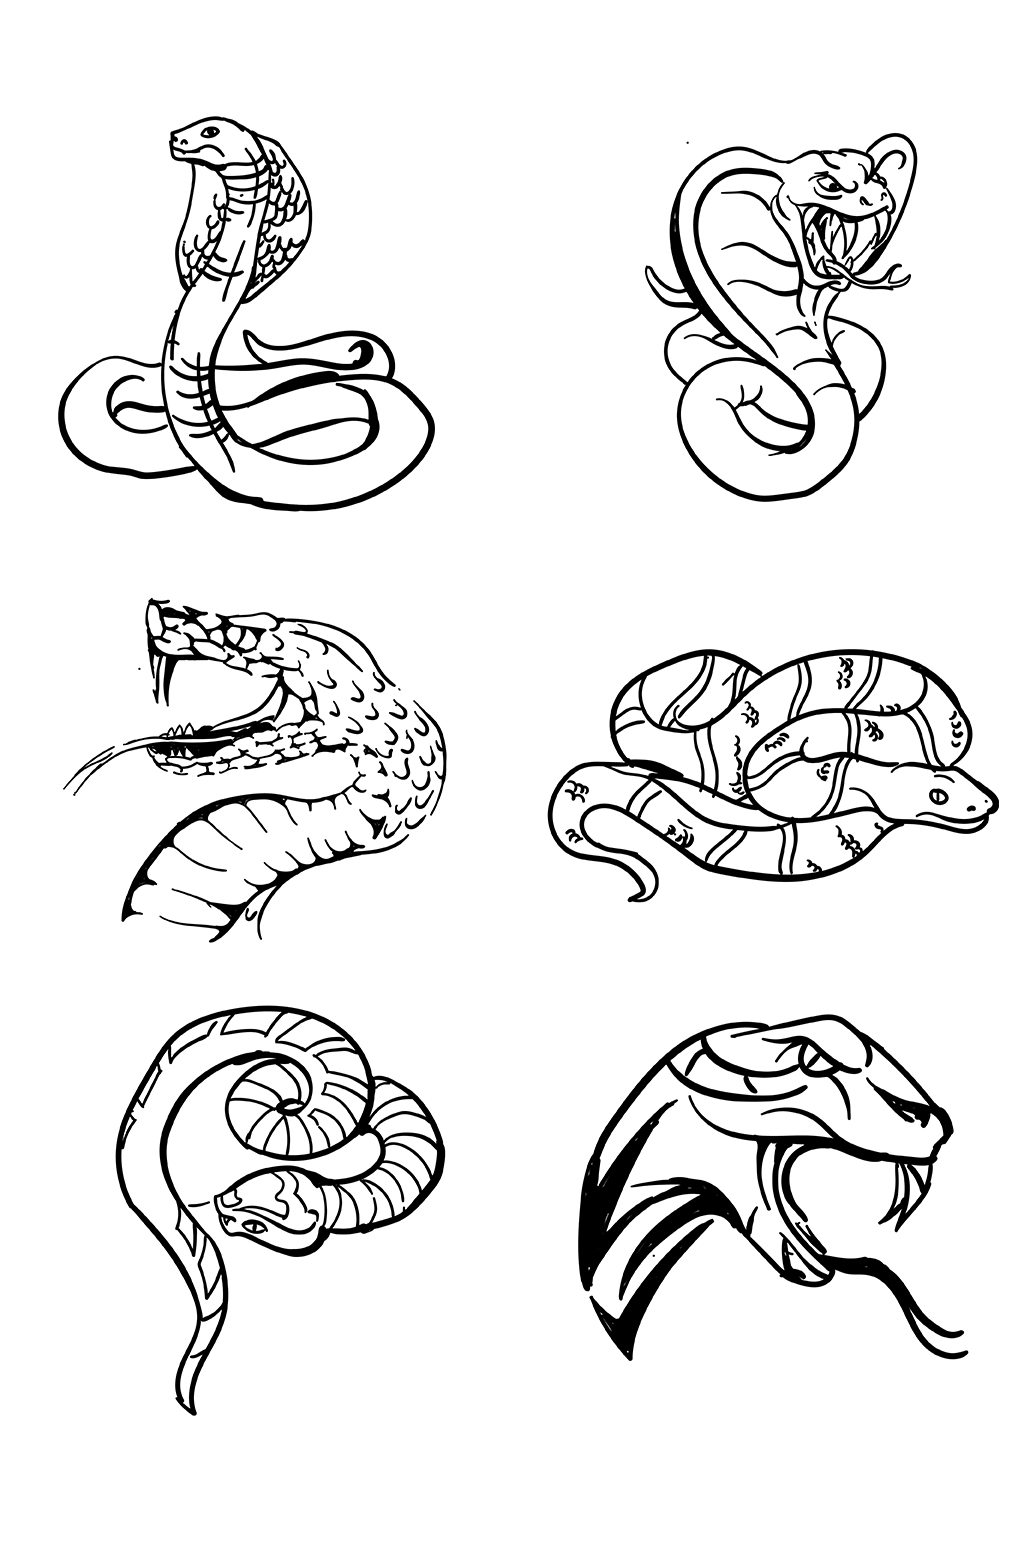 猛蛇的简笔画图片